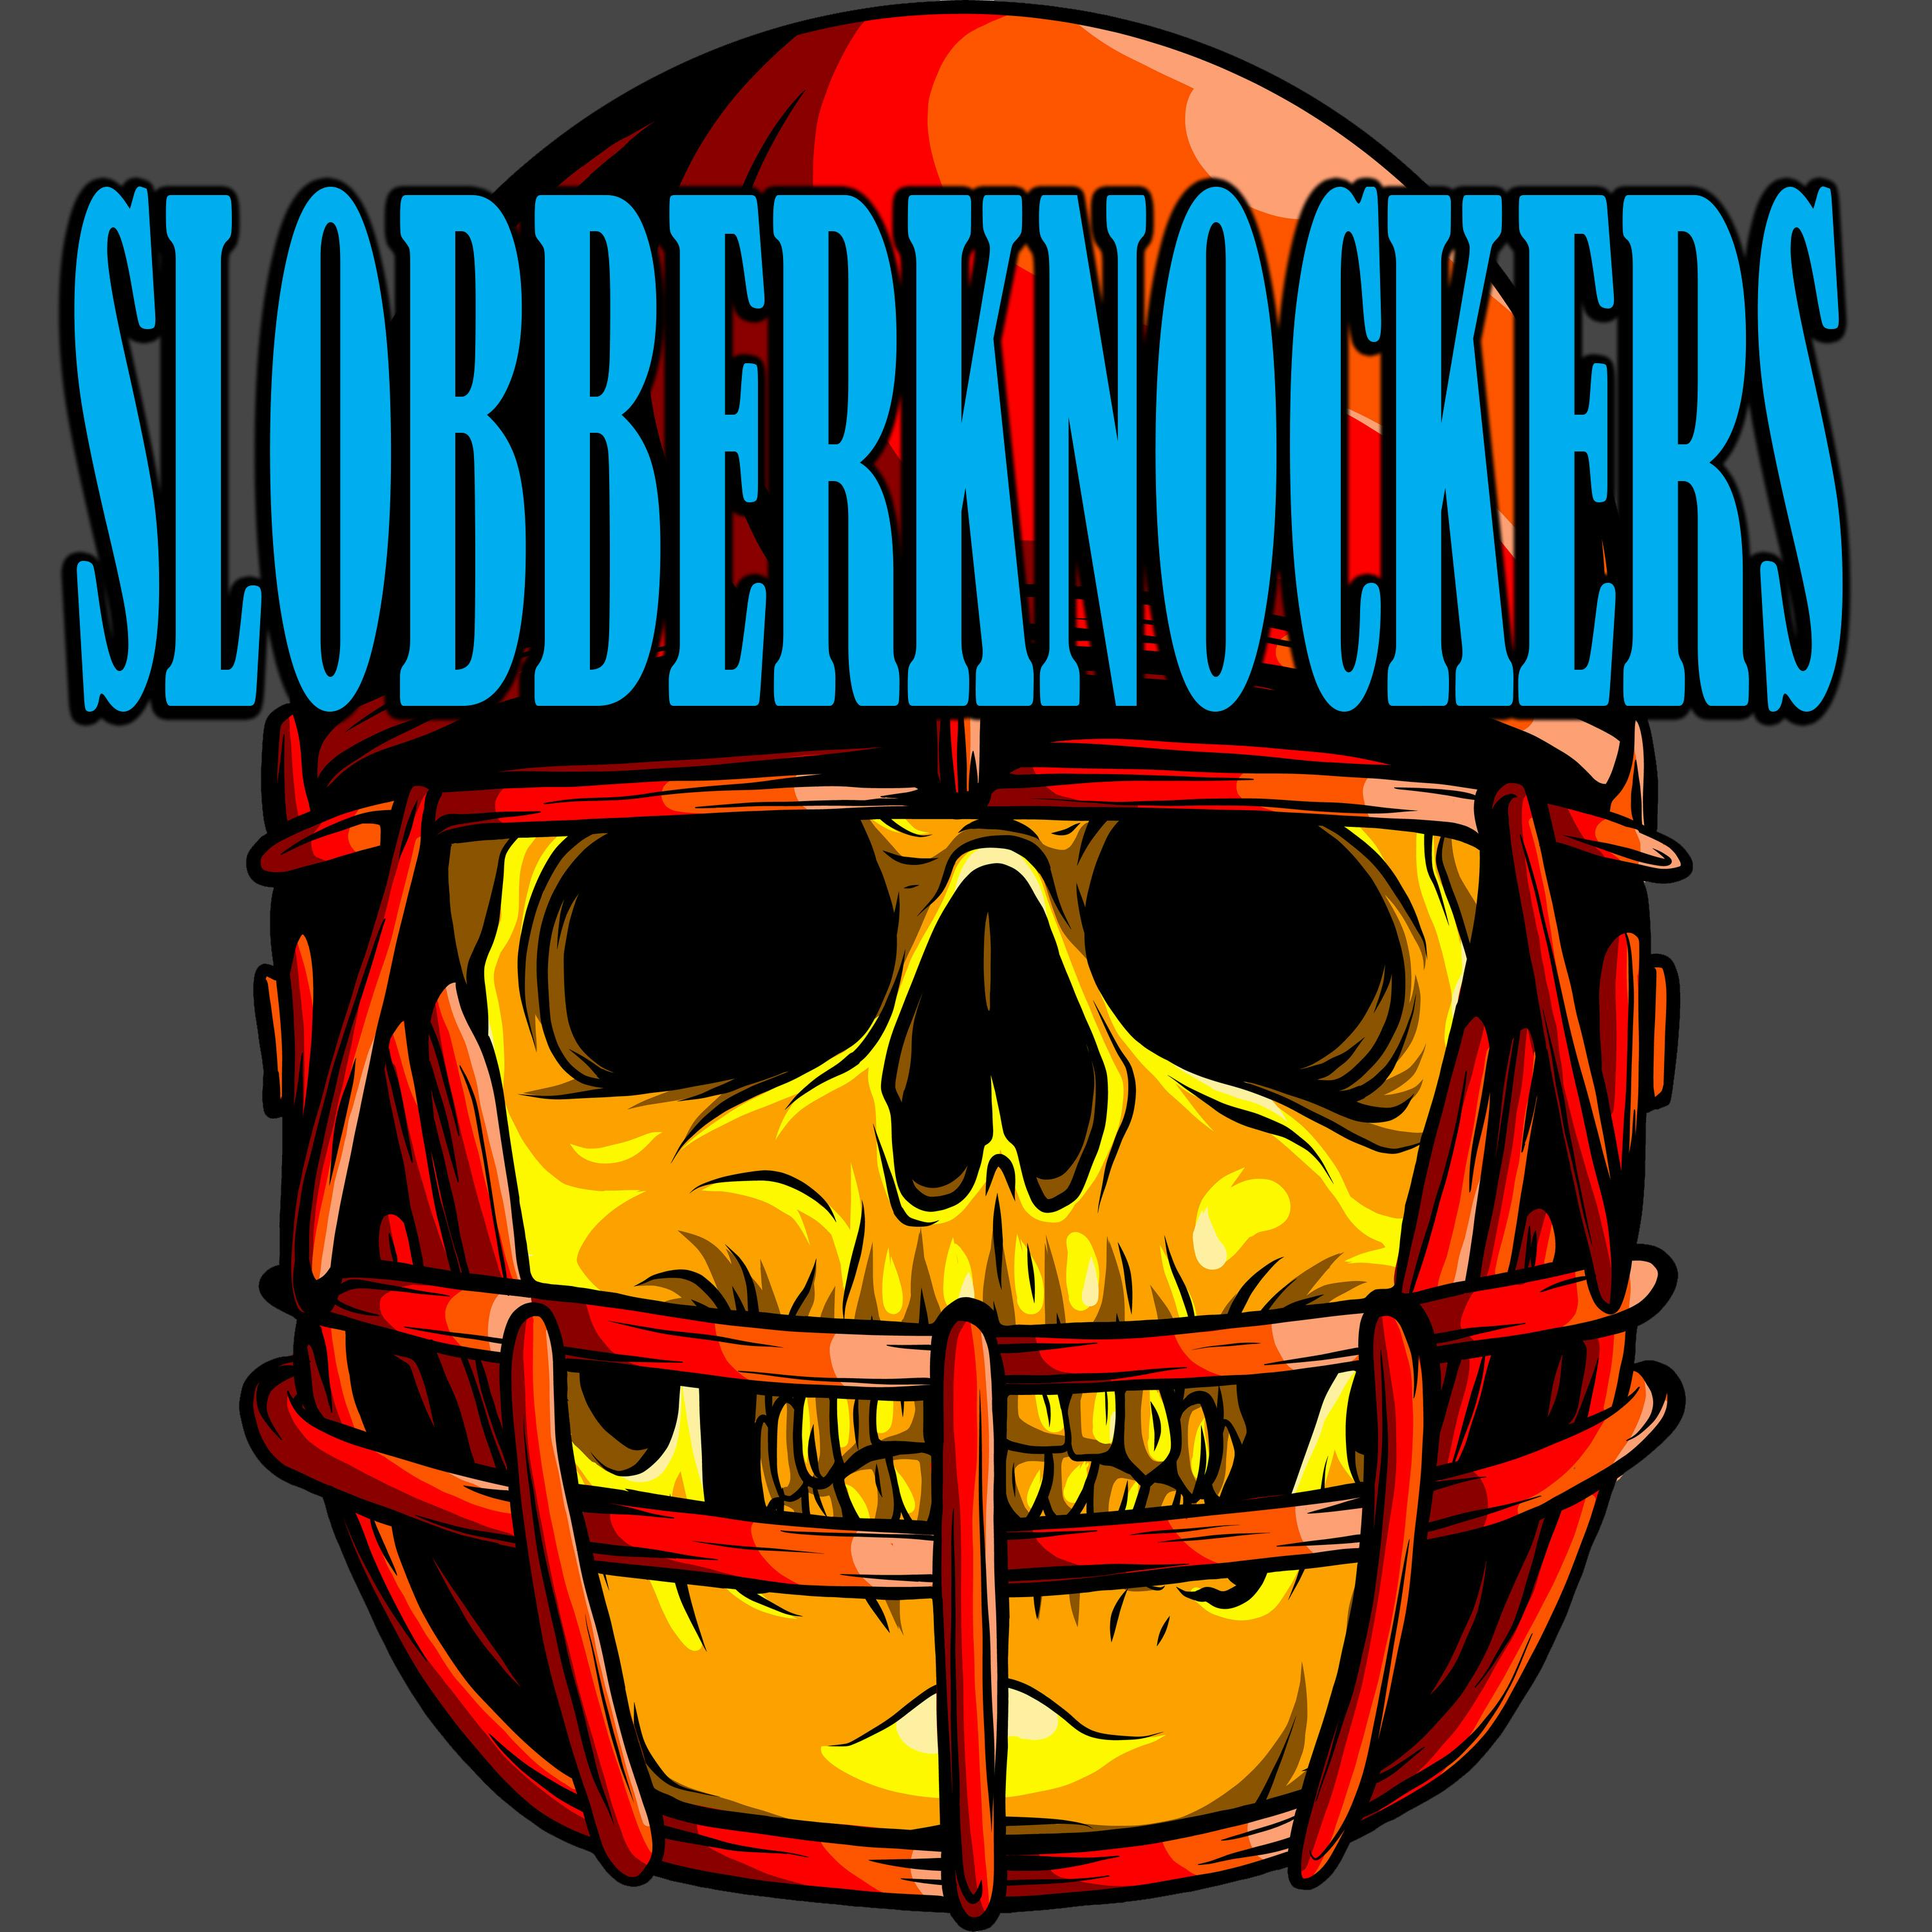 SLOBBERKNOCKERS NFL PLAYOFFS DIVISION ROUND